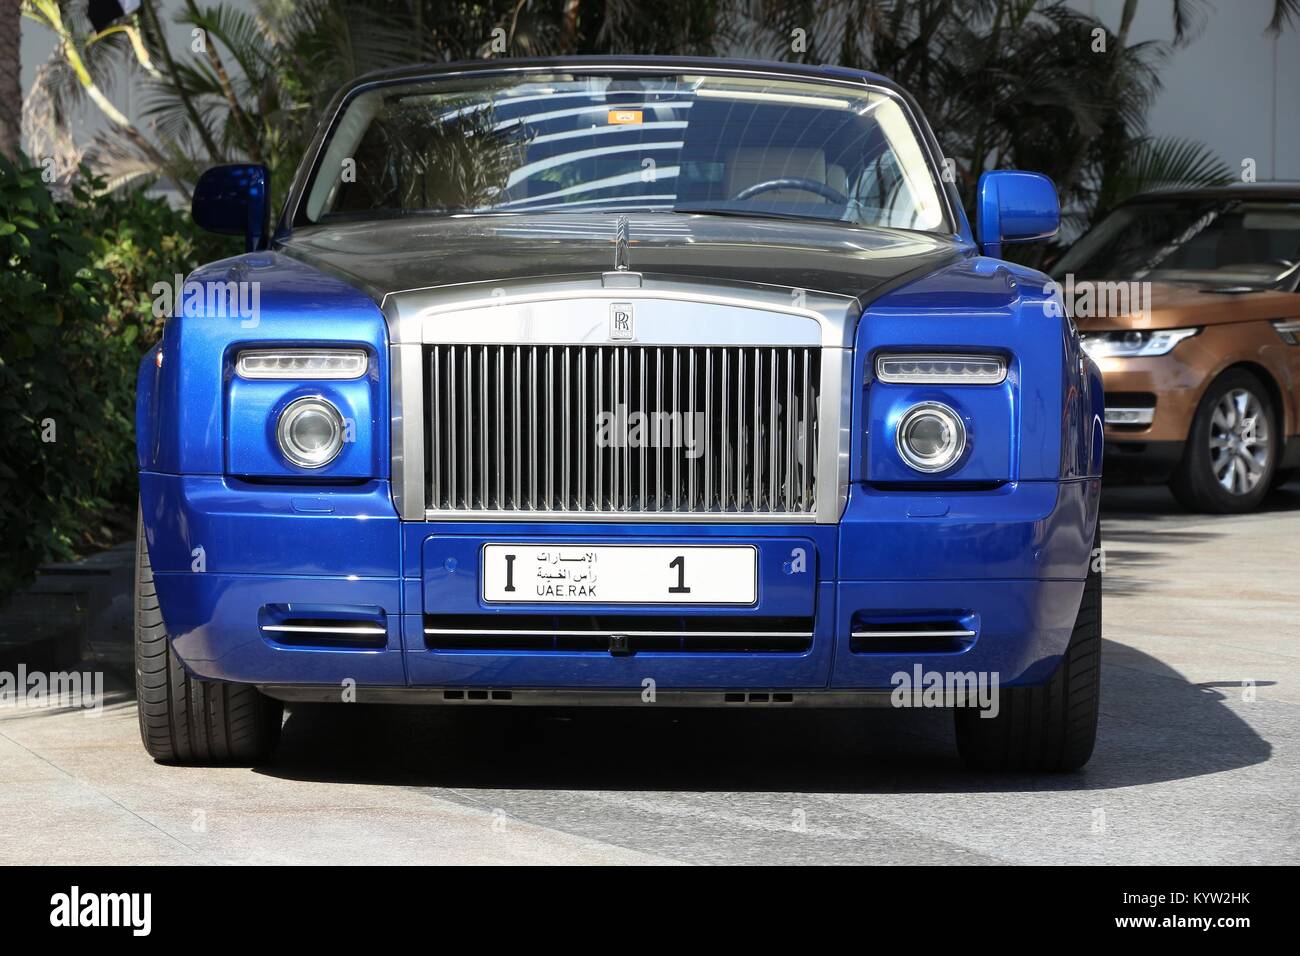 DUBAI, VAE - November 23, 2017: Rolls Royce mit Ras Al Khaimah Nummernschild. 1 in Dubai geparkt. Das nummernschild war für 2,3 Millionen U versteigert Stockfoto